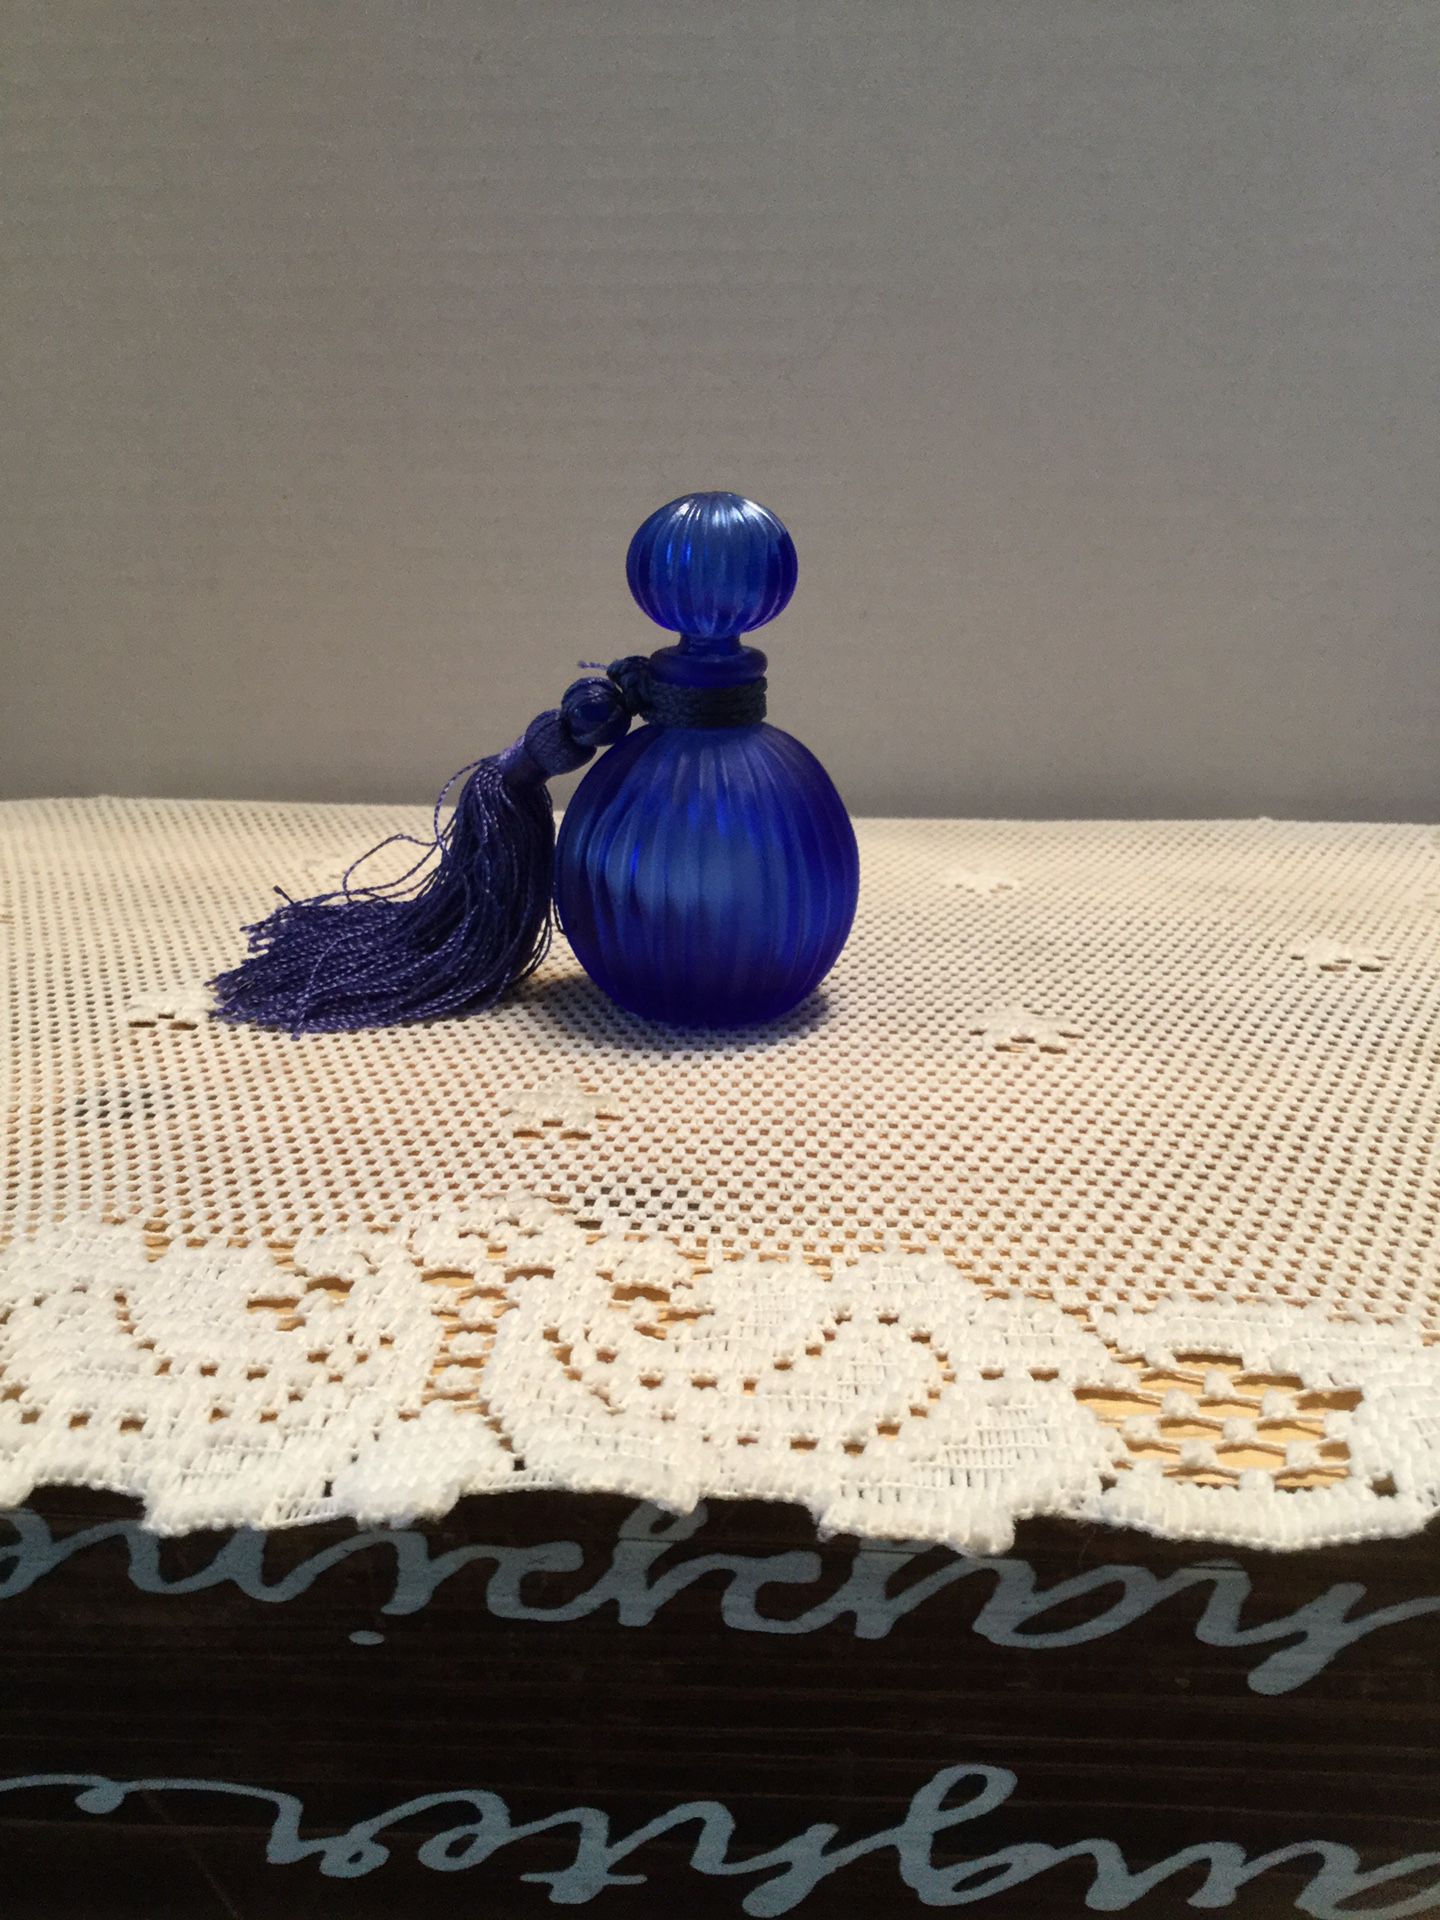 Cobalt blue perfume bottle